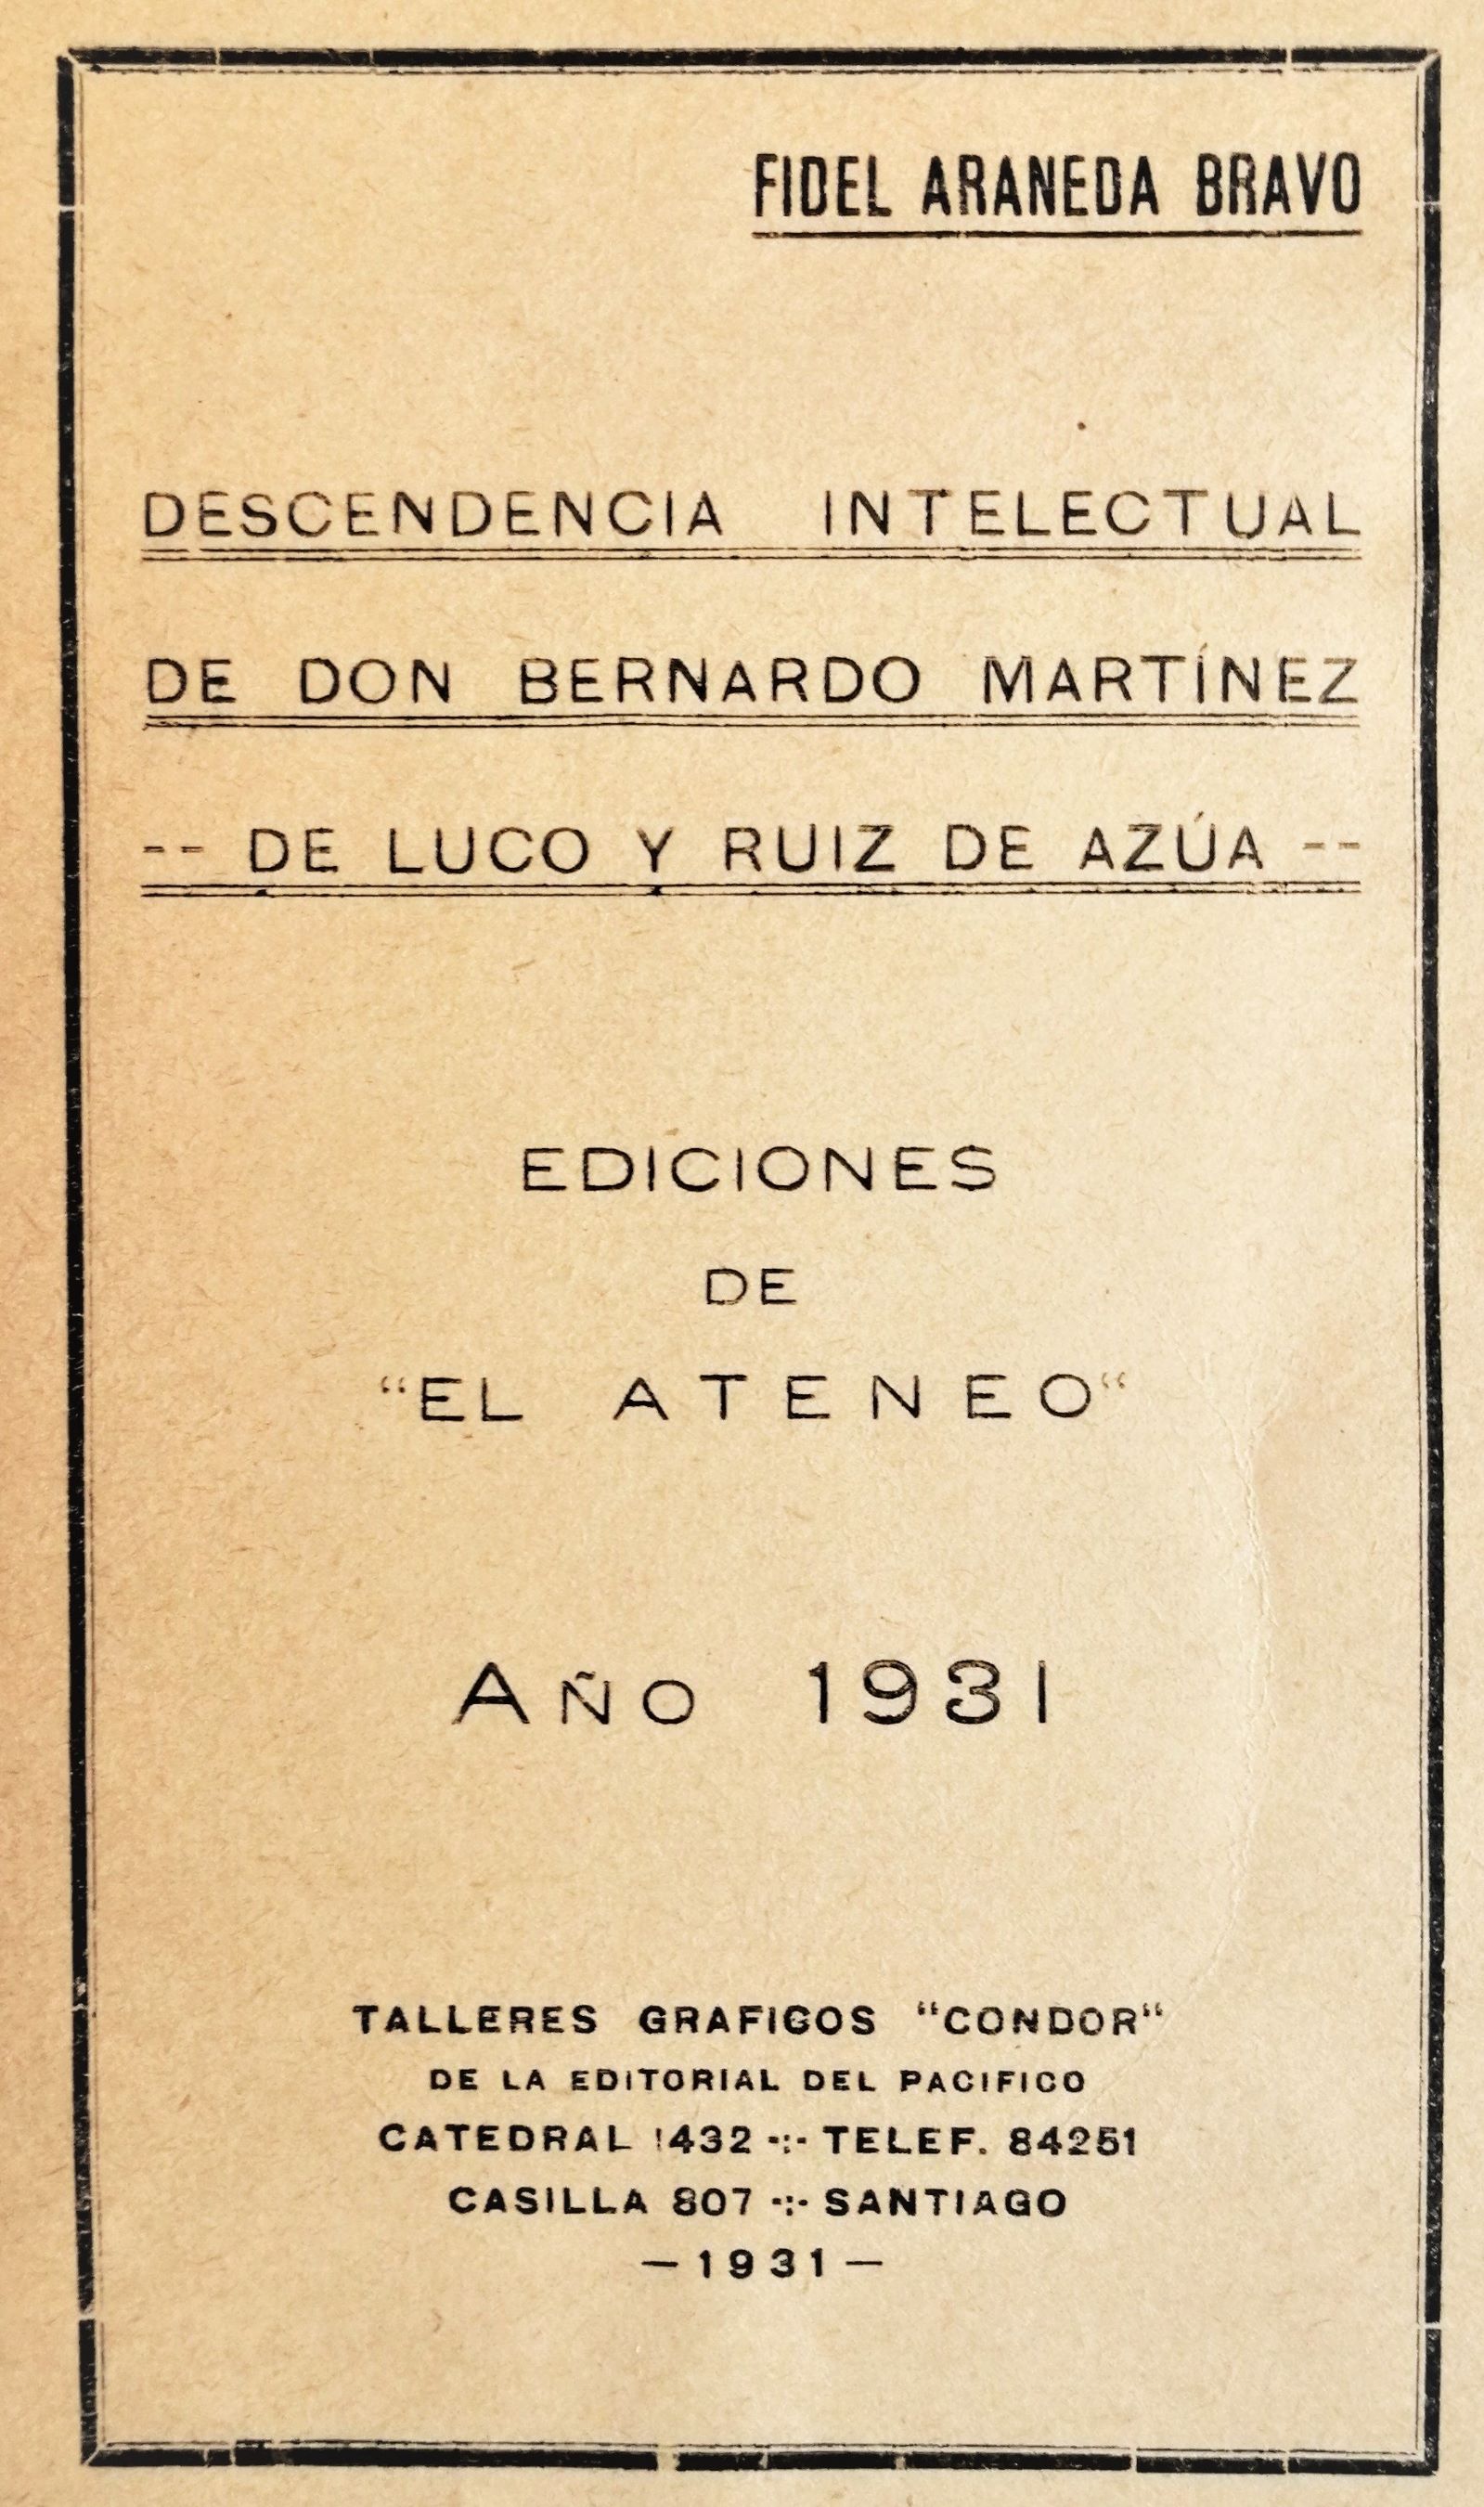 Fidel Araneda Bravo - Descendencia intelectual de don Bernardo Martínez de Luco y Ruiz de Azúa